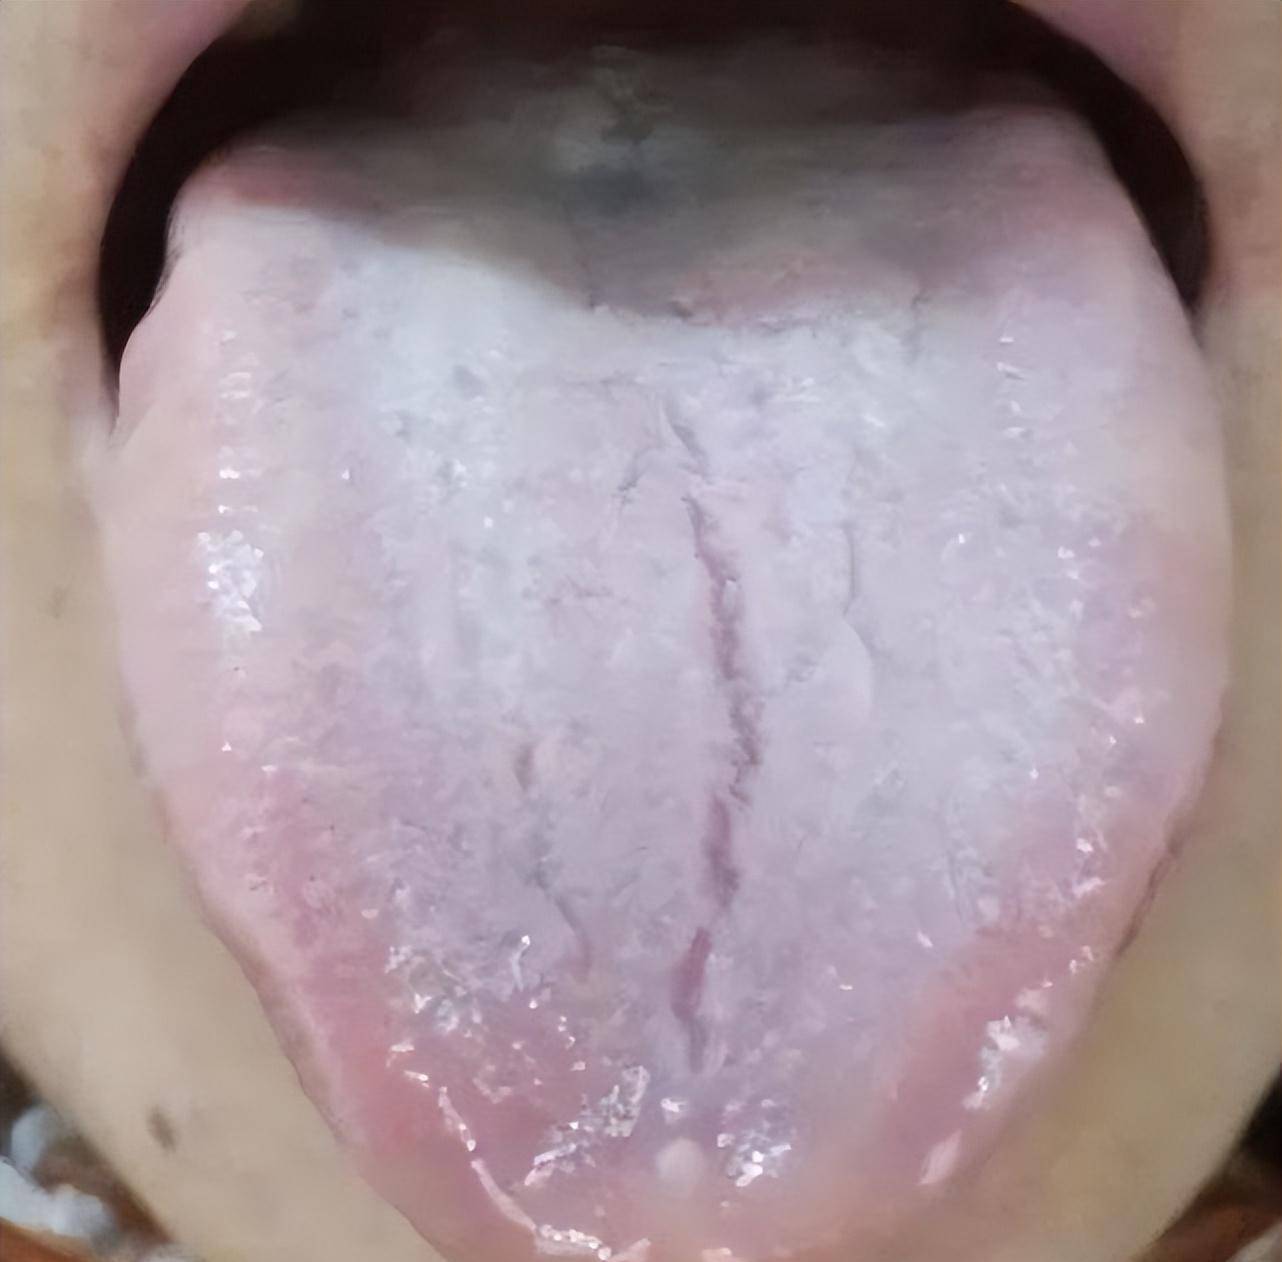 舌头有裂纹是怎么了?教你辨别四种常见裂纹舌,看看你是哪一种?